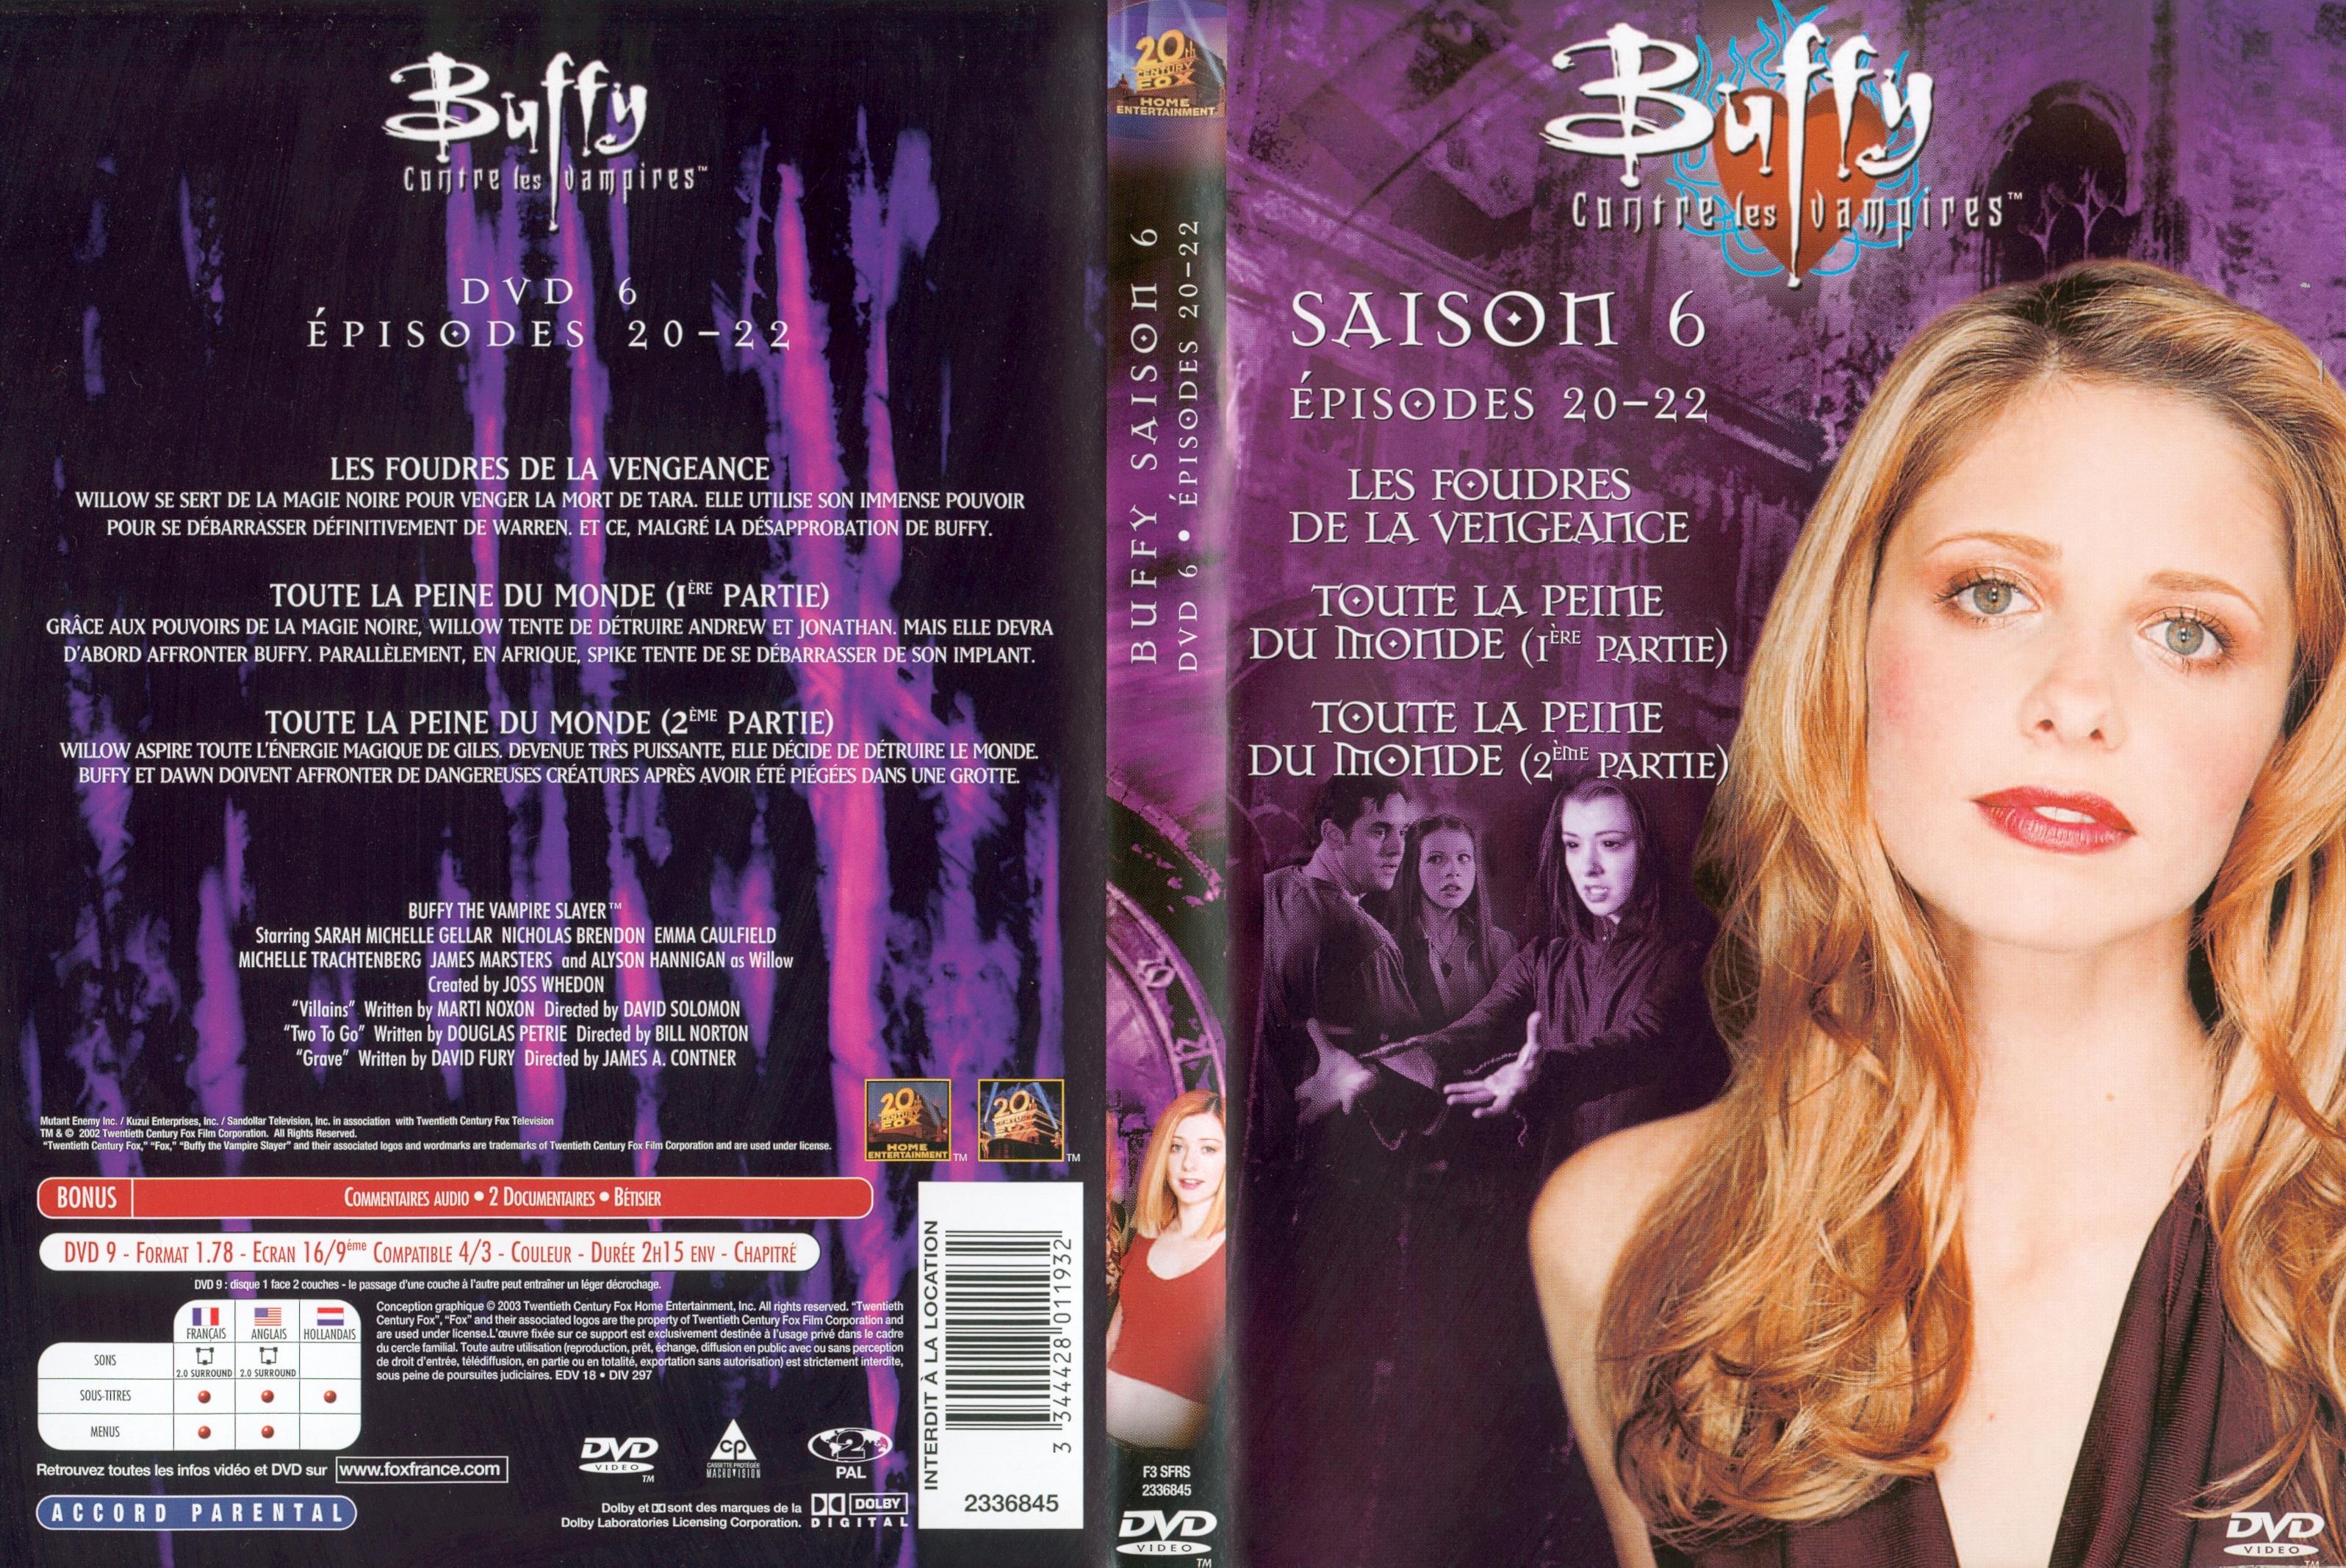 Jaquette DVD Buffy contre les vampires Saison 6 DVD 6